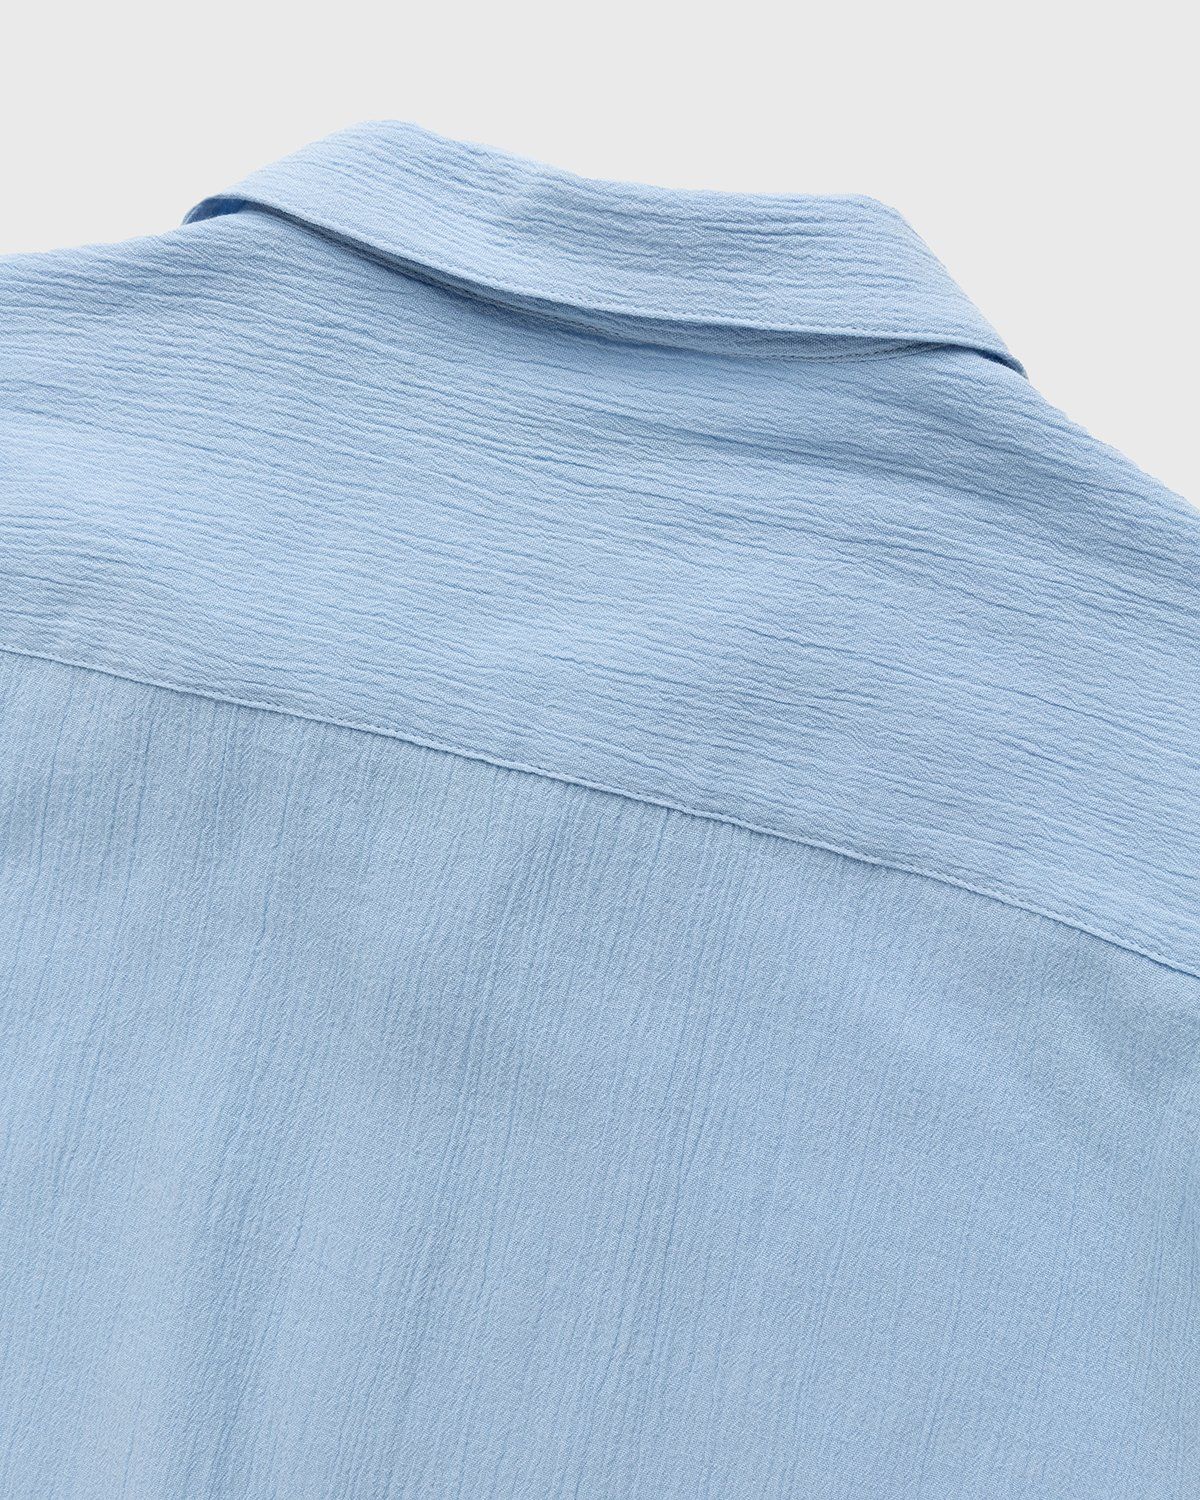 Highsnobiety – Crepe Short Sleeve Shirt Sky Blue - Shortsleeve Shirts - Blue - Image 4